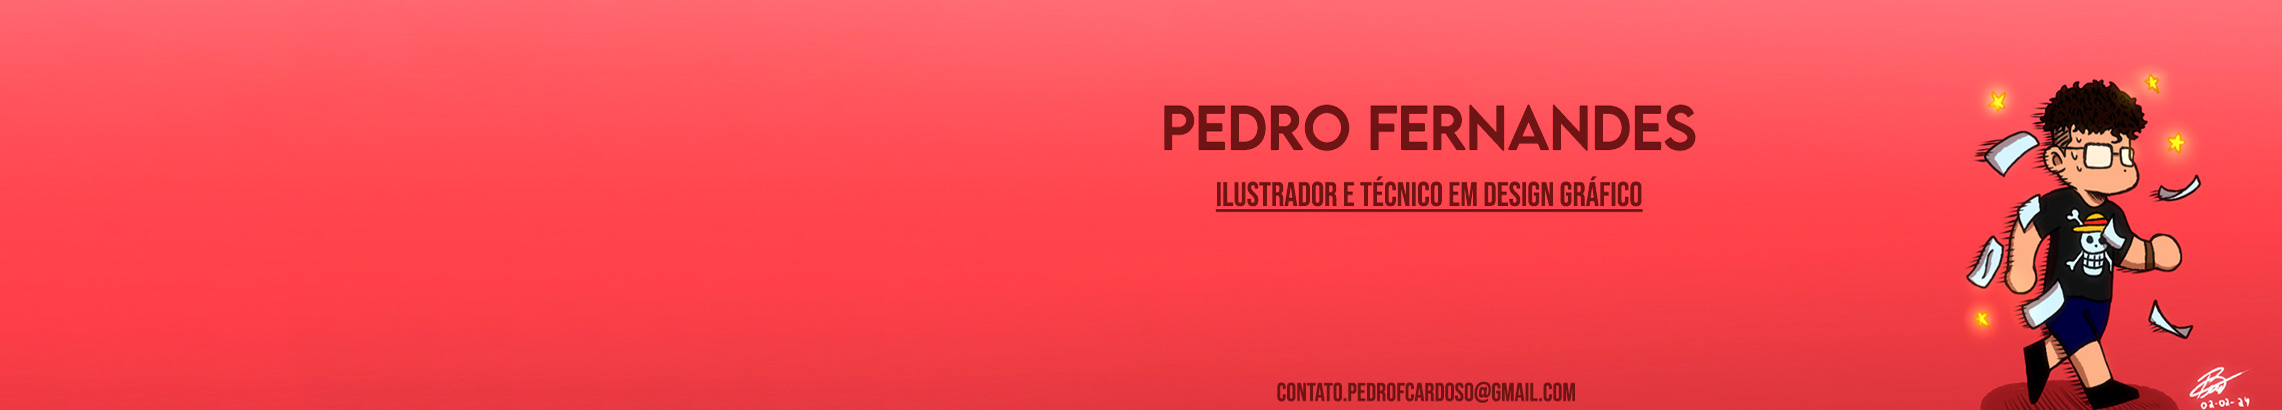 Pedro Fernandess profilbanner